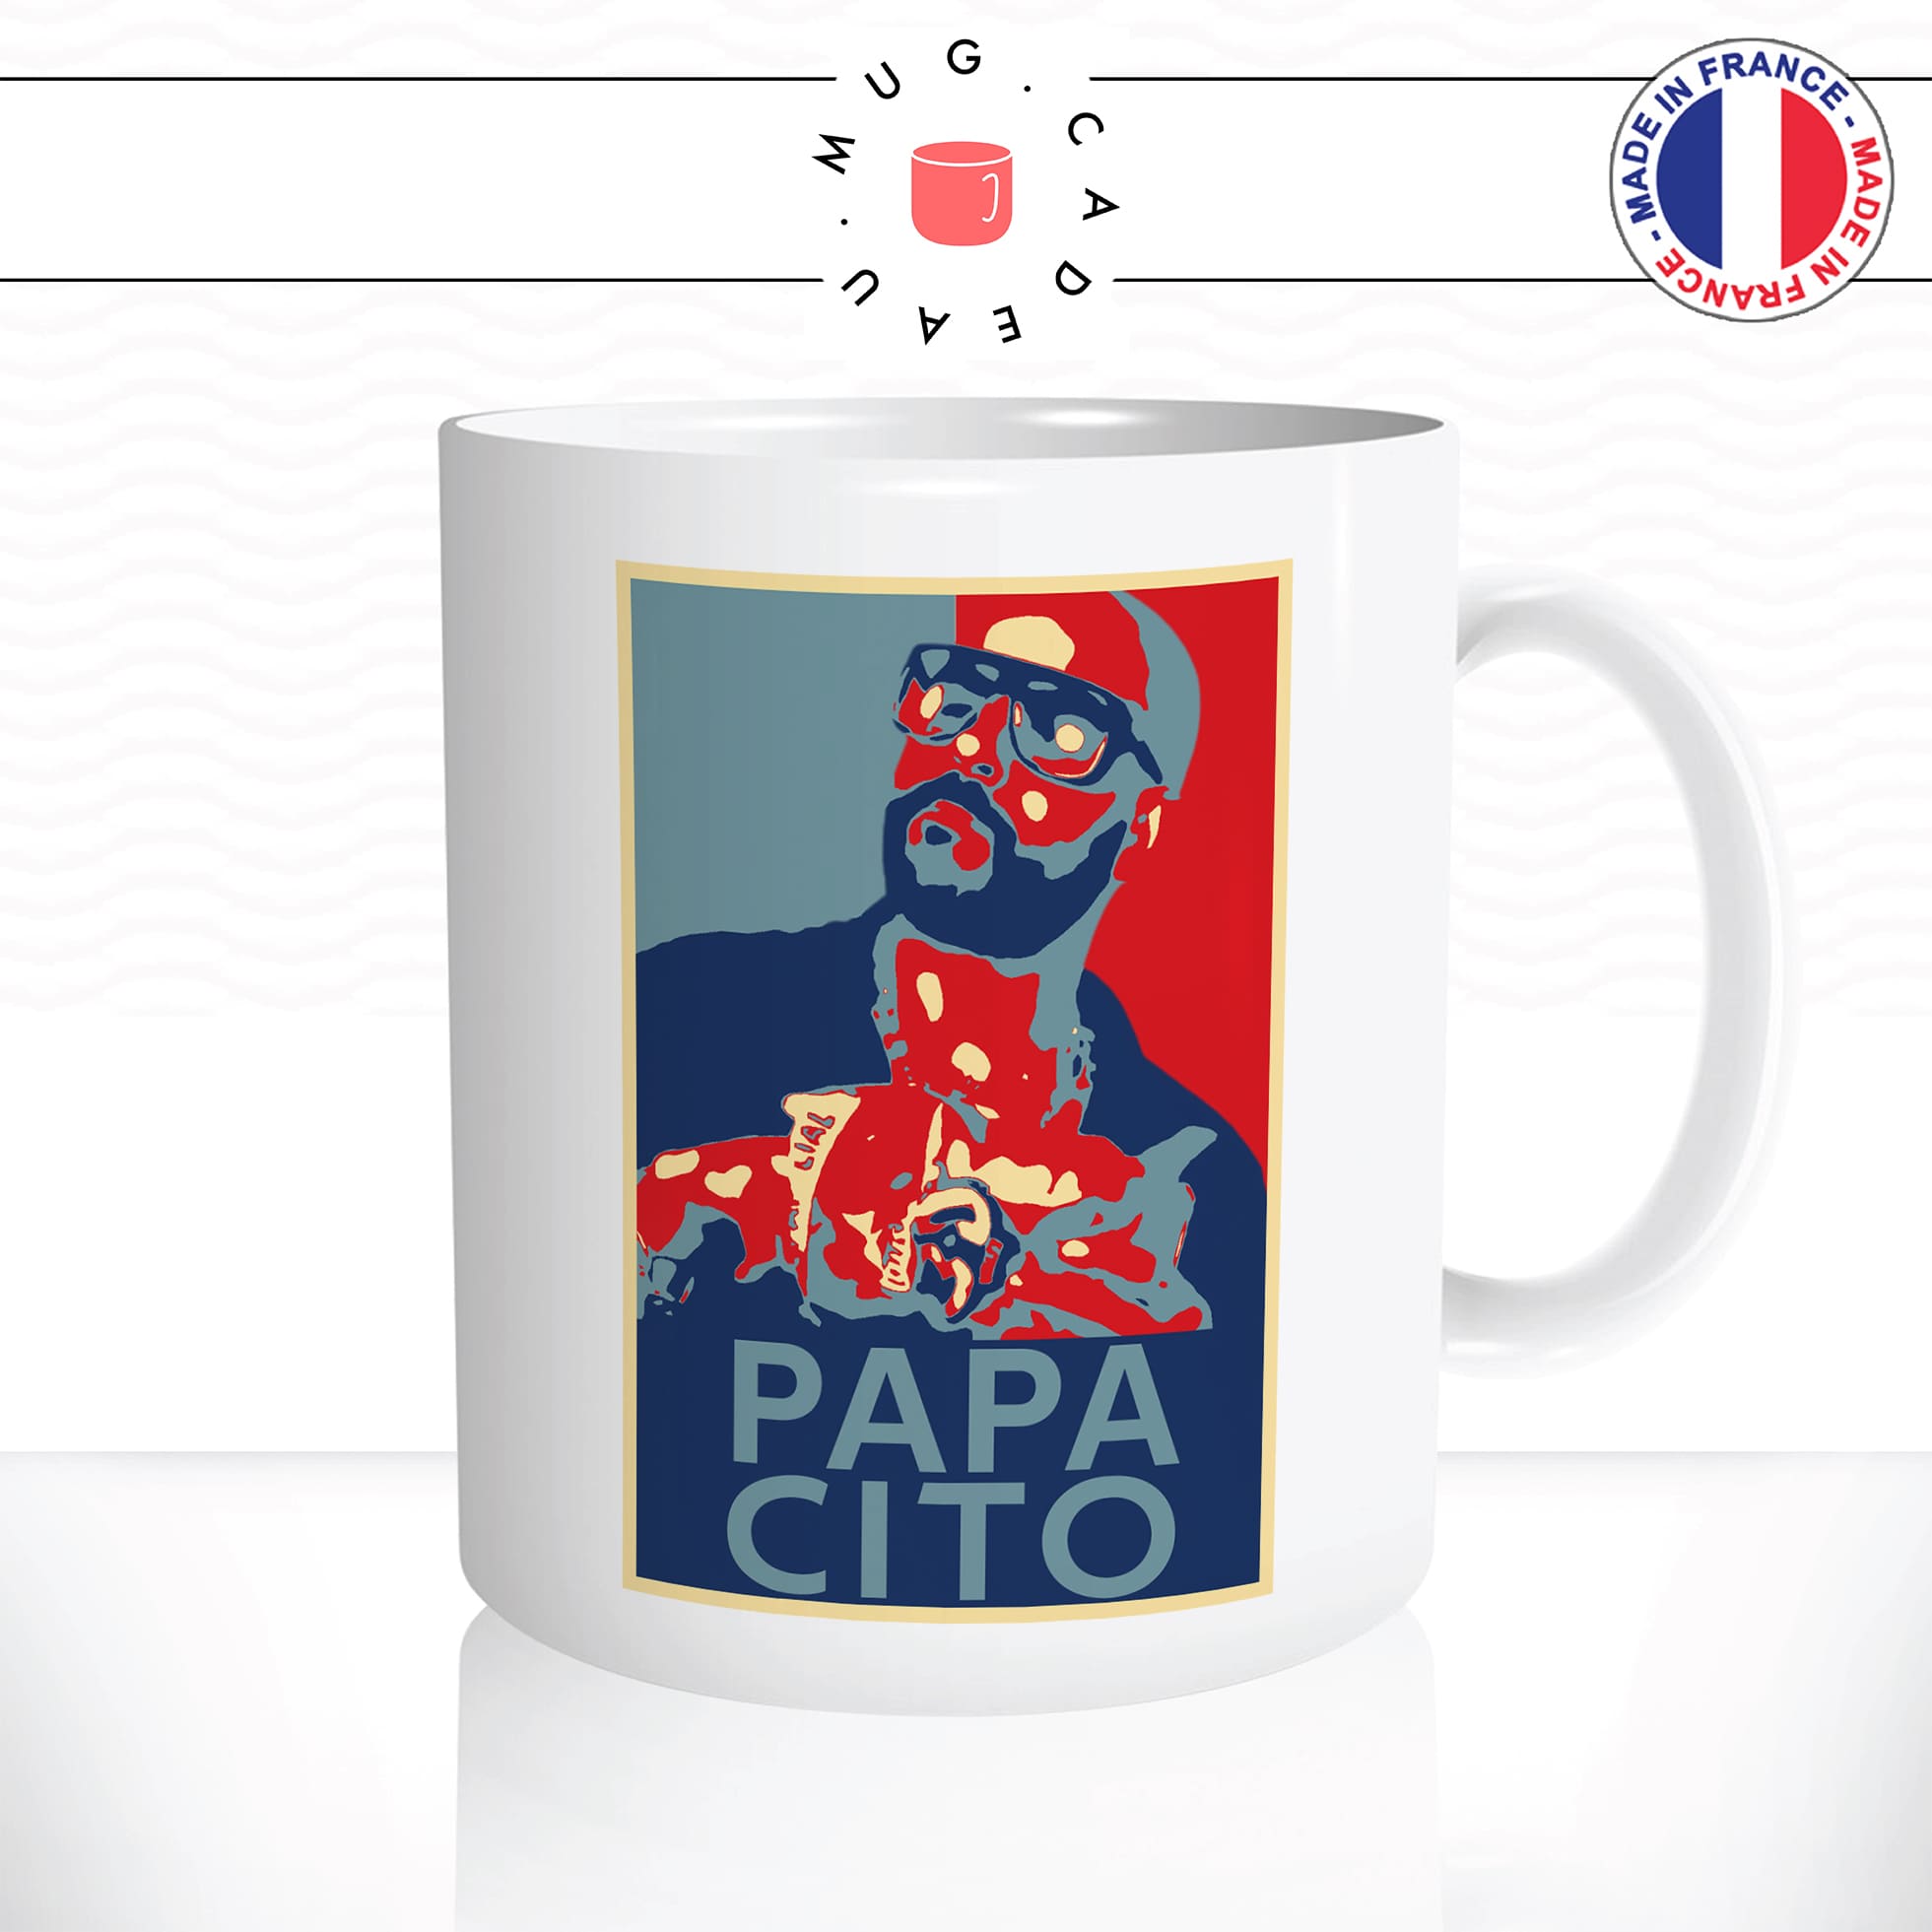 mug-tasse-blanc-simple-papacito-parodie-chips-youtubeur-humour-affiche-obama-drole-idée-cadeau-originale-café-thé2